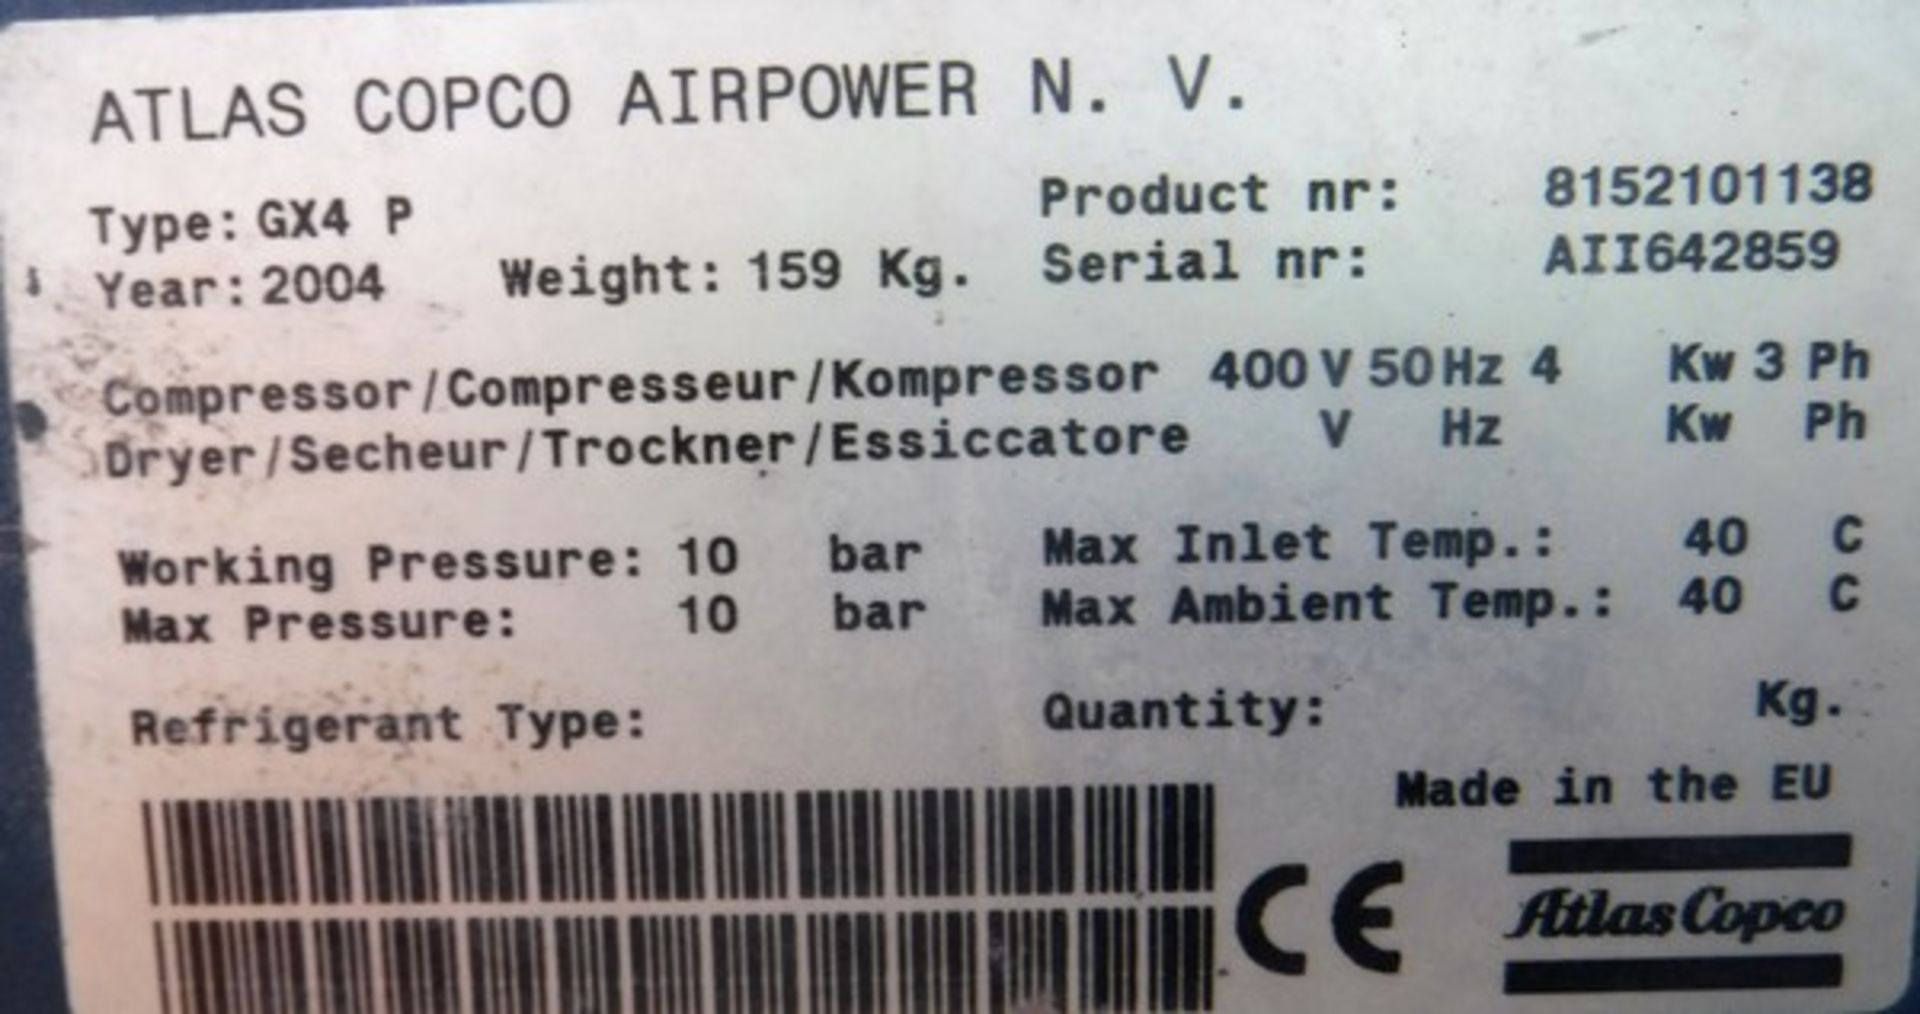 2004 ATLAS COPCO GX4 compressor s/n AII642859 - Image 2 of 4